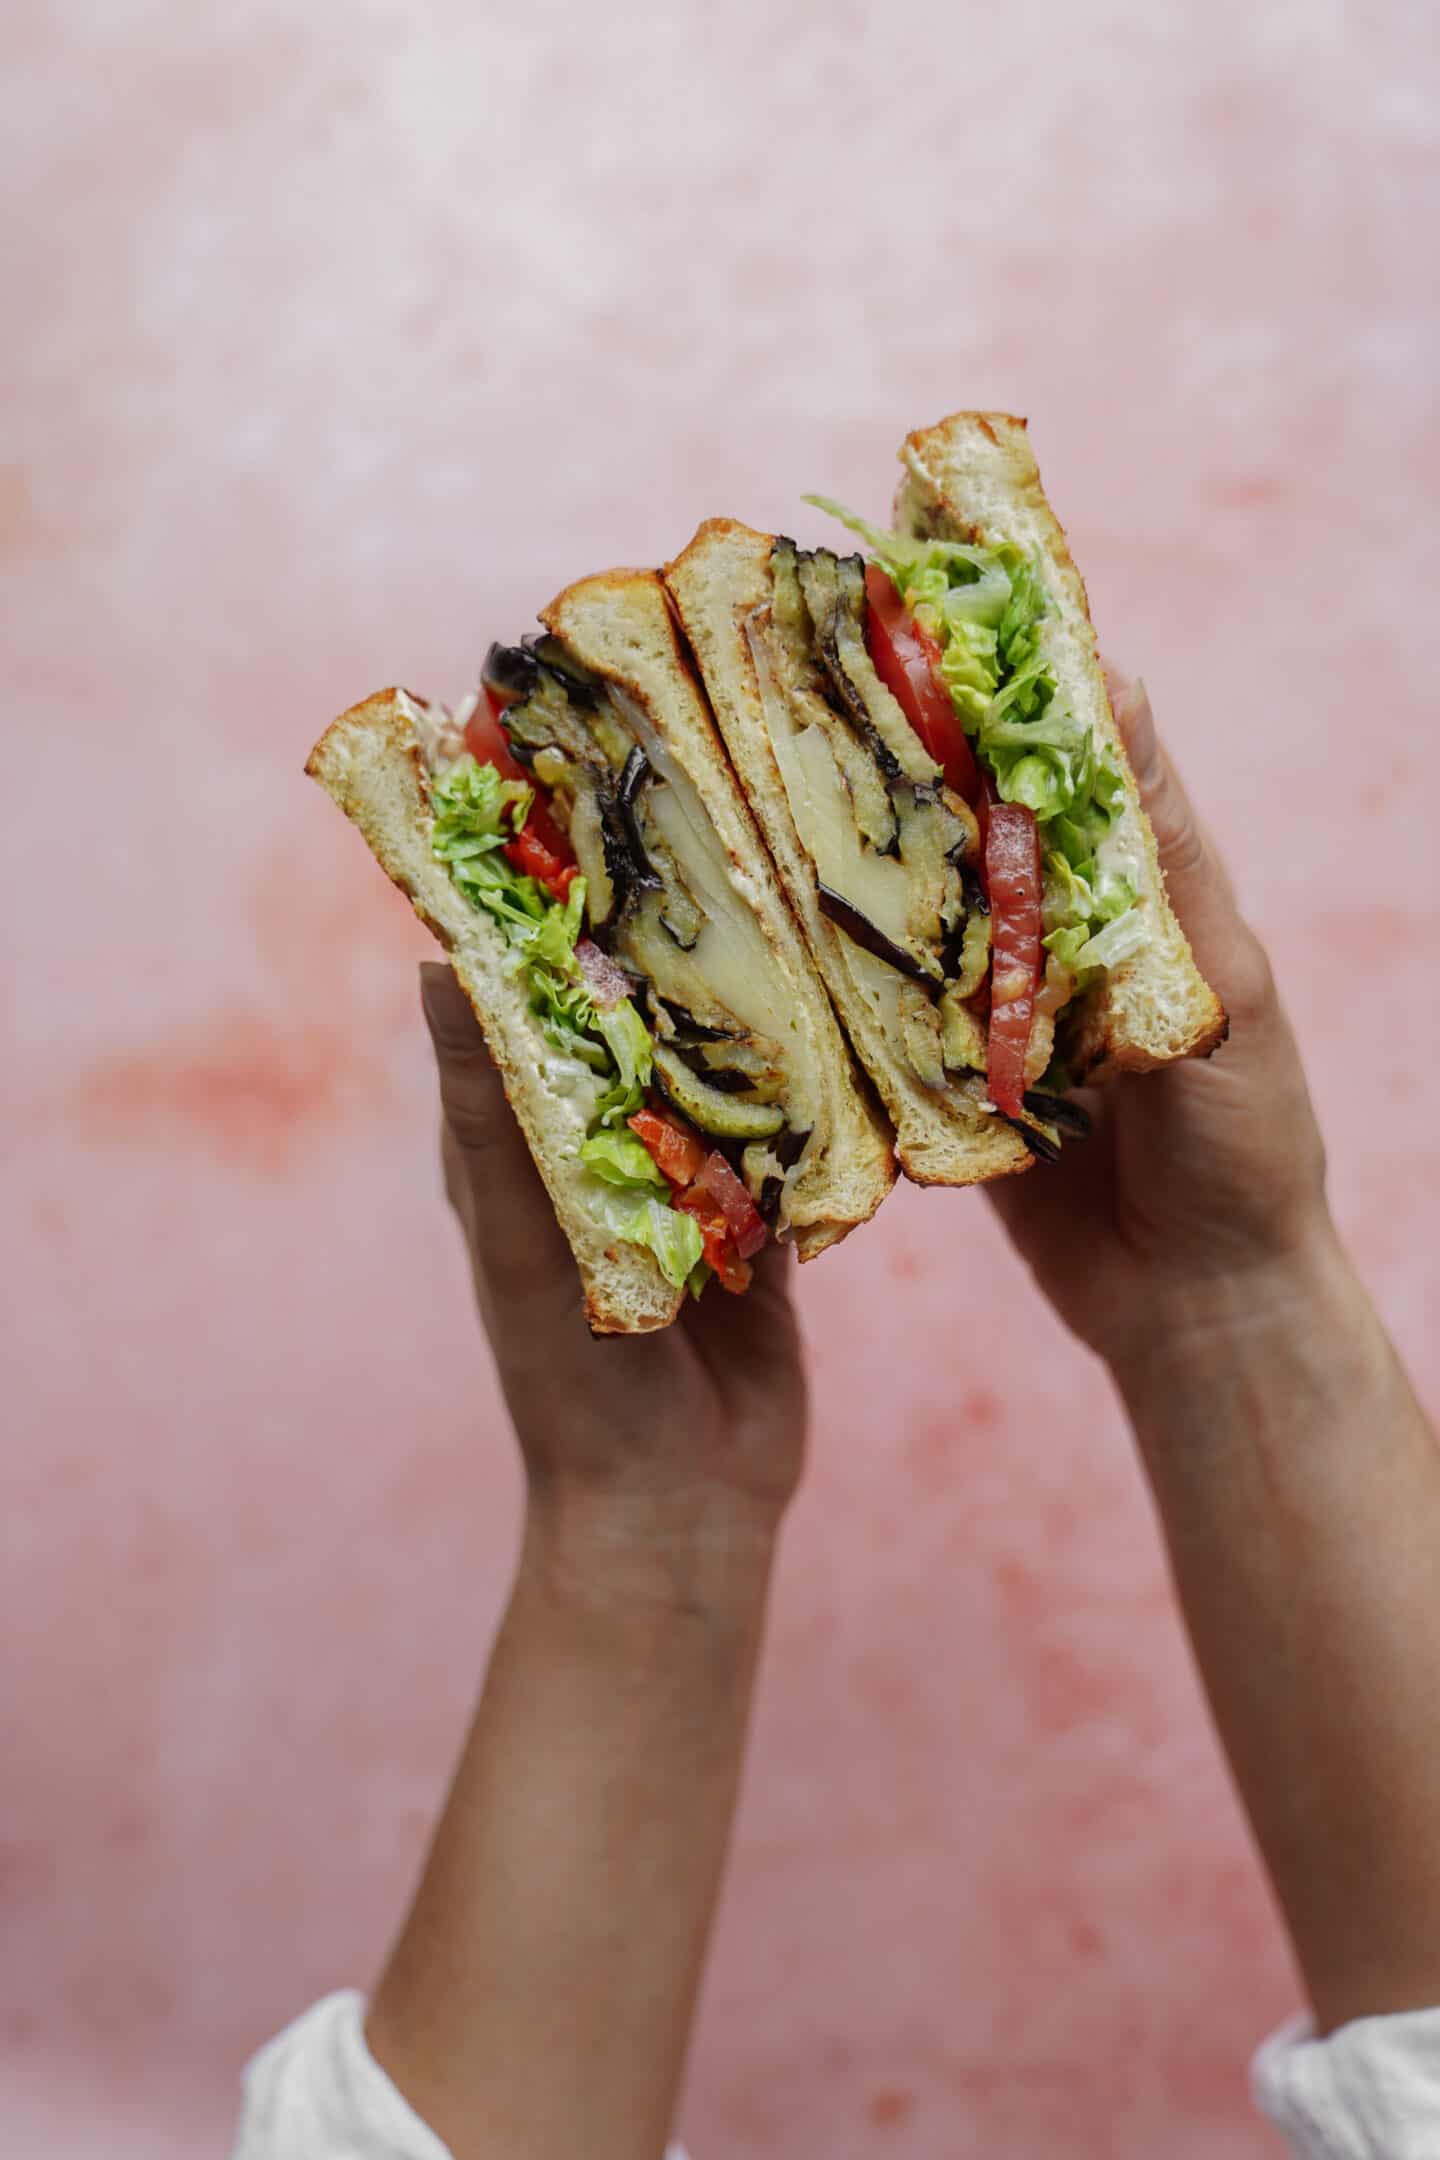 Hands holding a ham sandwich